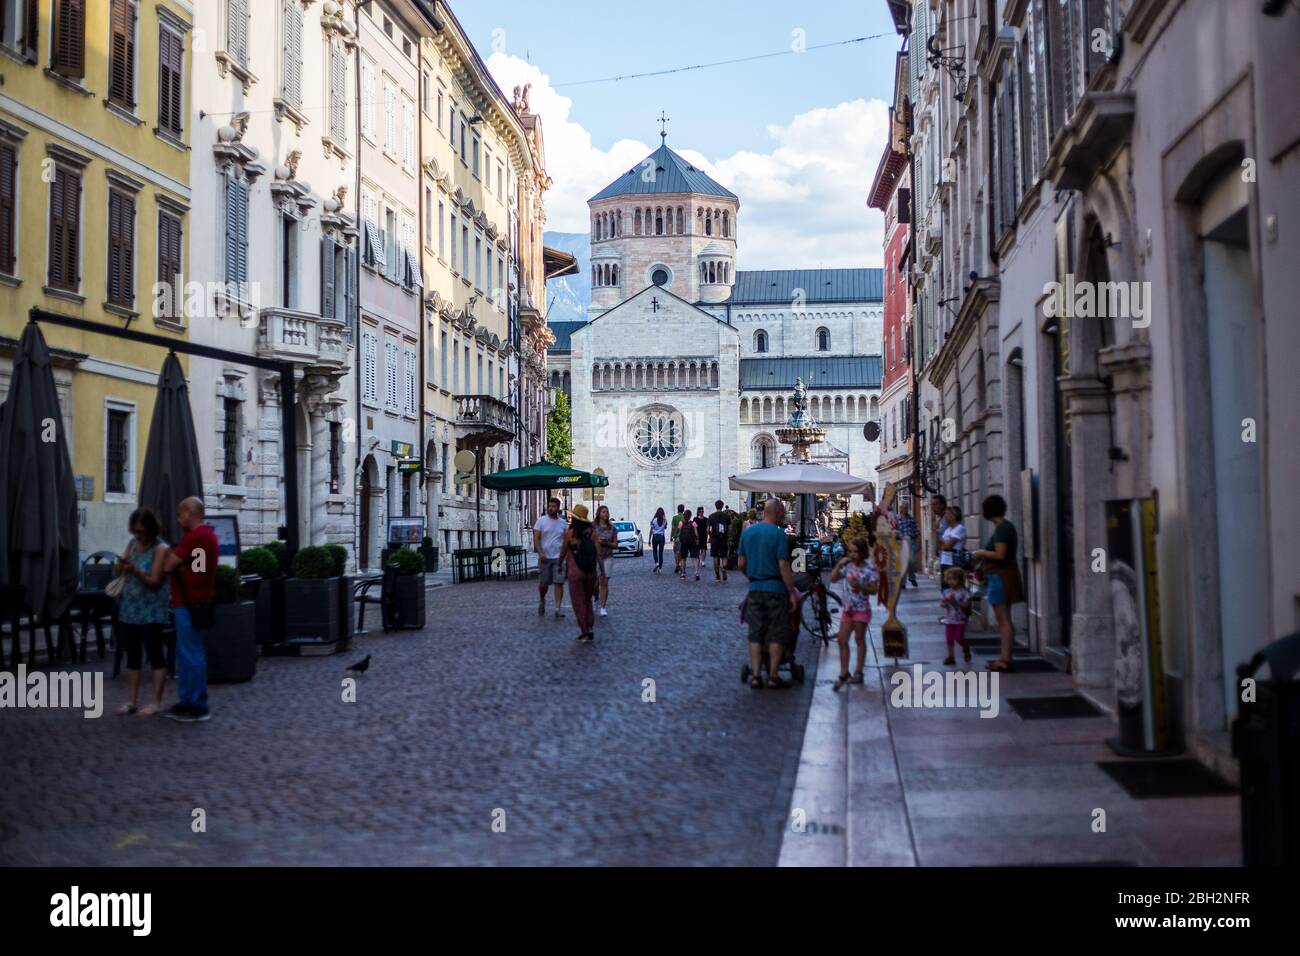 Trento, Italien - 15. August 2019: Menschen, die in der Altstadt von Trento spazieren gehen, mit der St. Vigil Kathedrale im Hintergrund Stockfoto